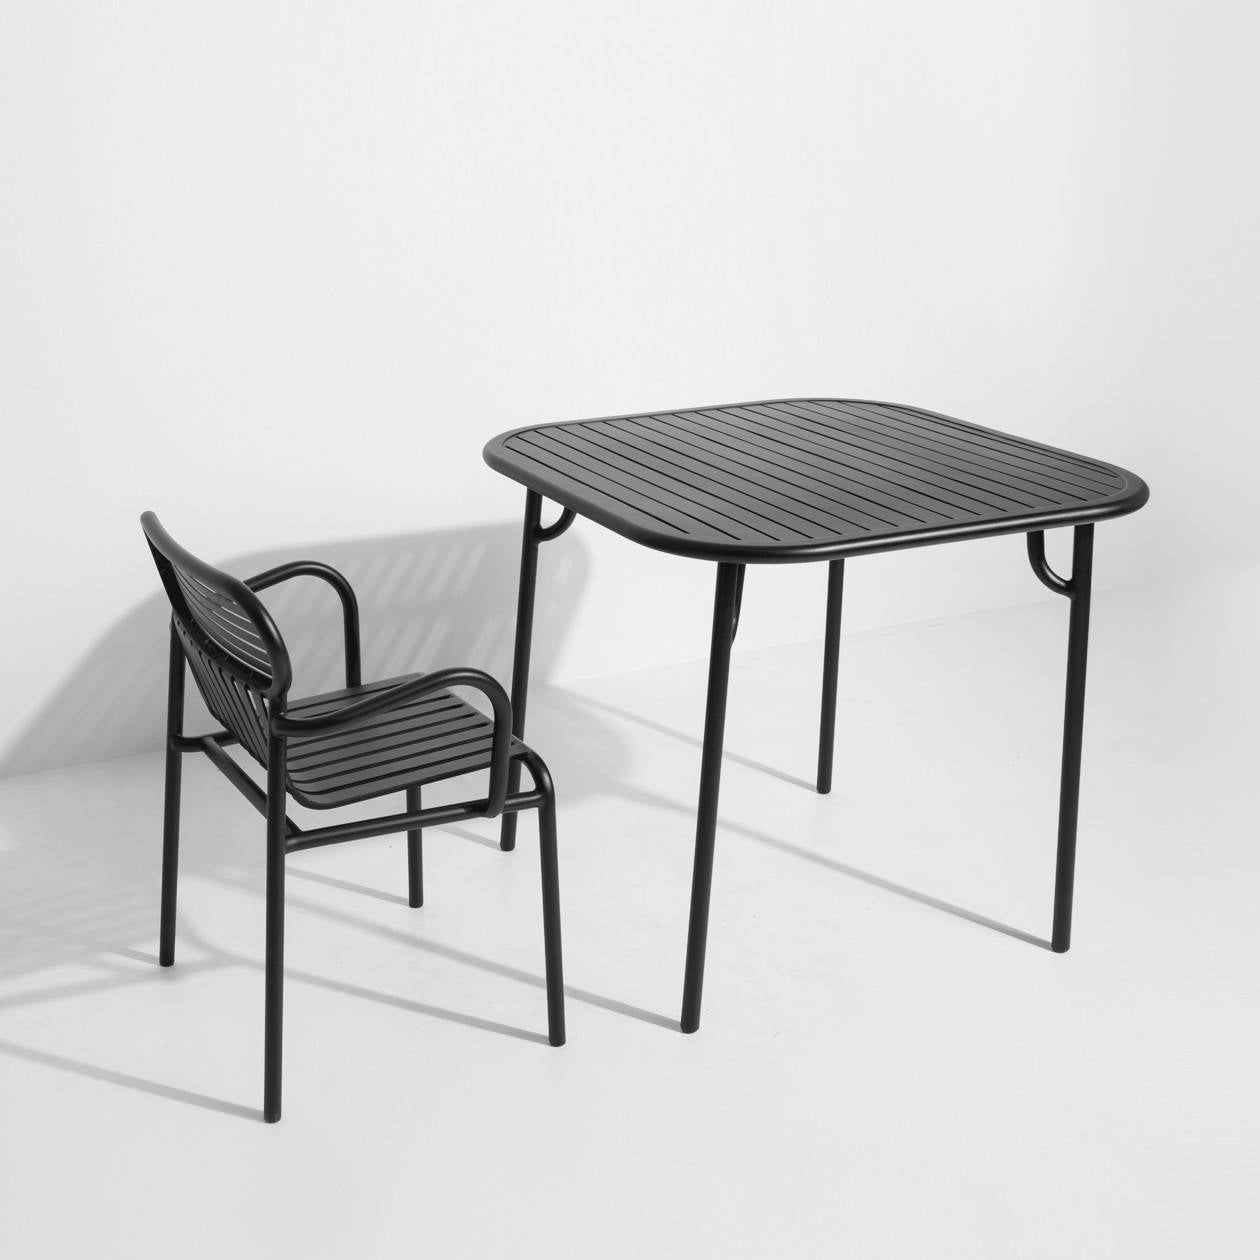 Week-End Tisch Small in Black präsentiert im Onlineshop von KAQTU Design AG. Gartentisch ist von Petite Friture